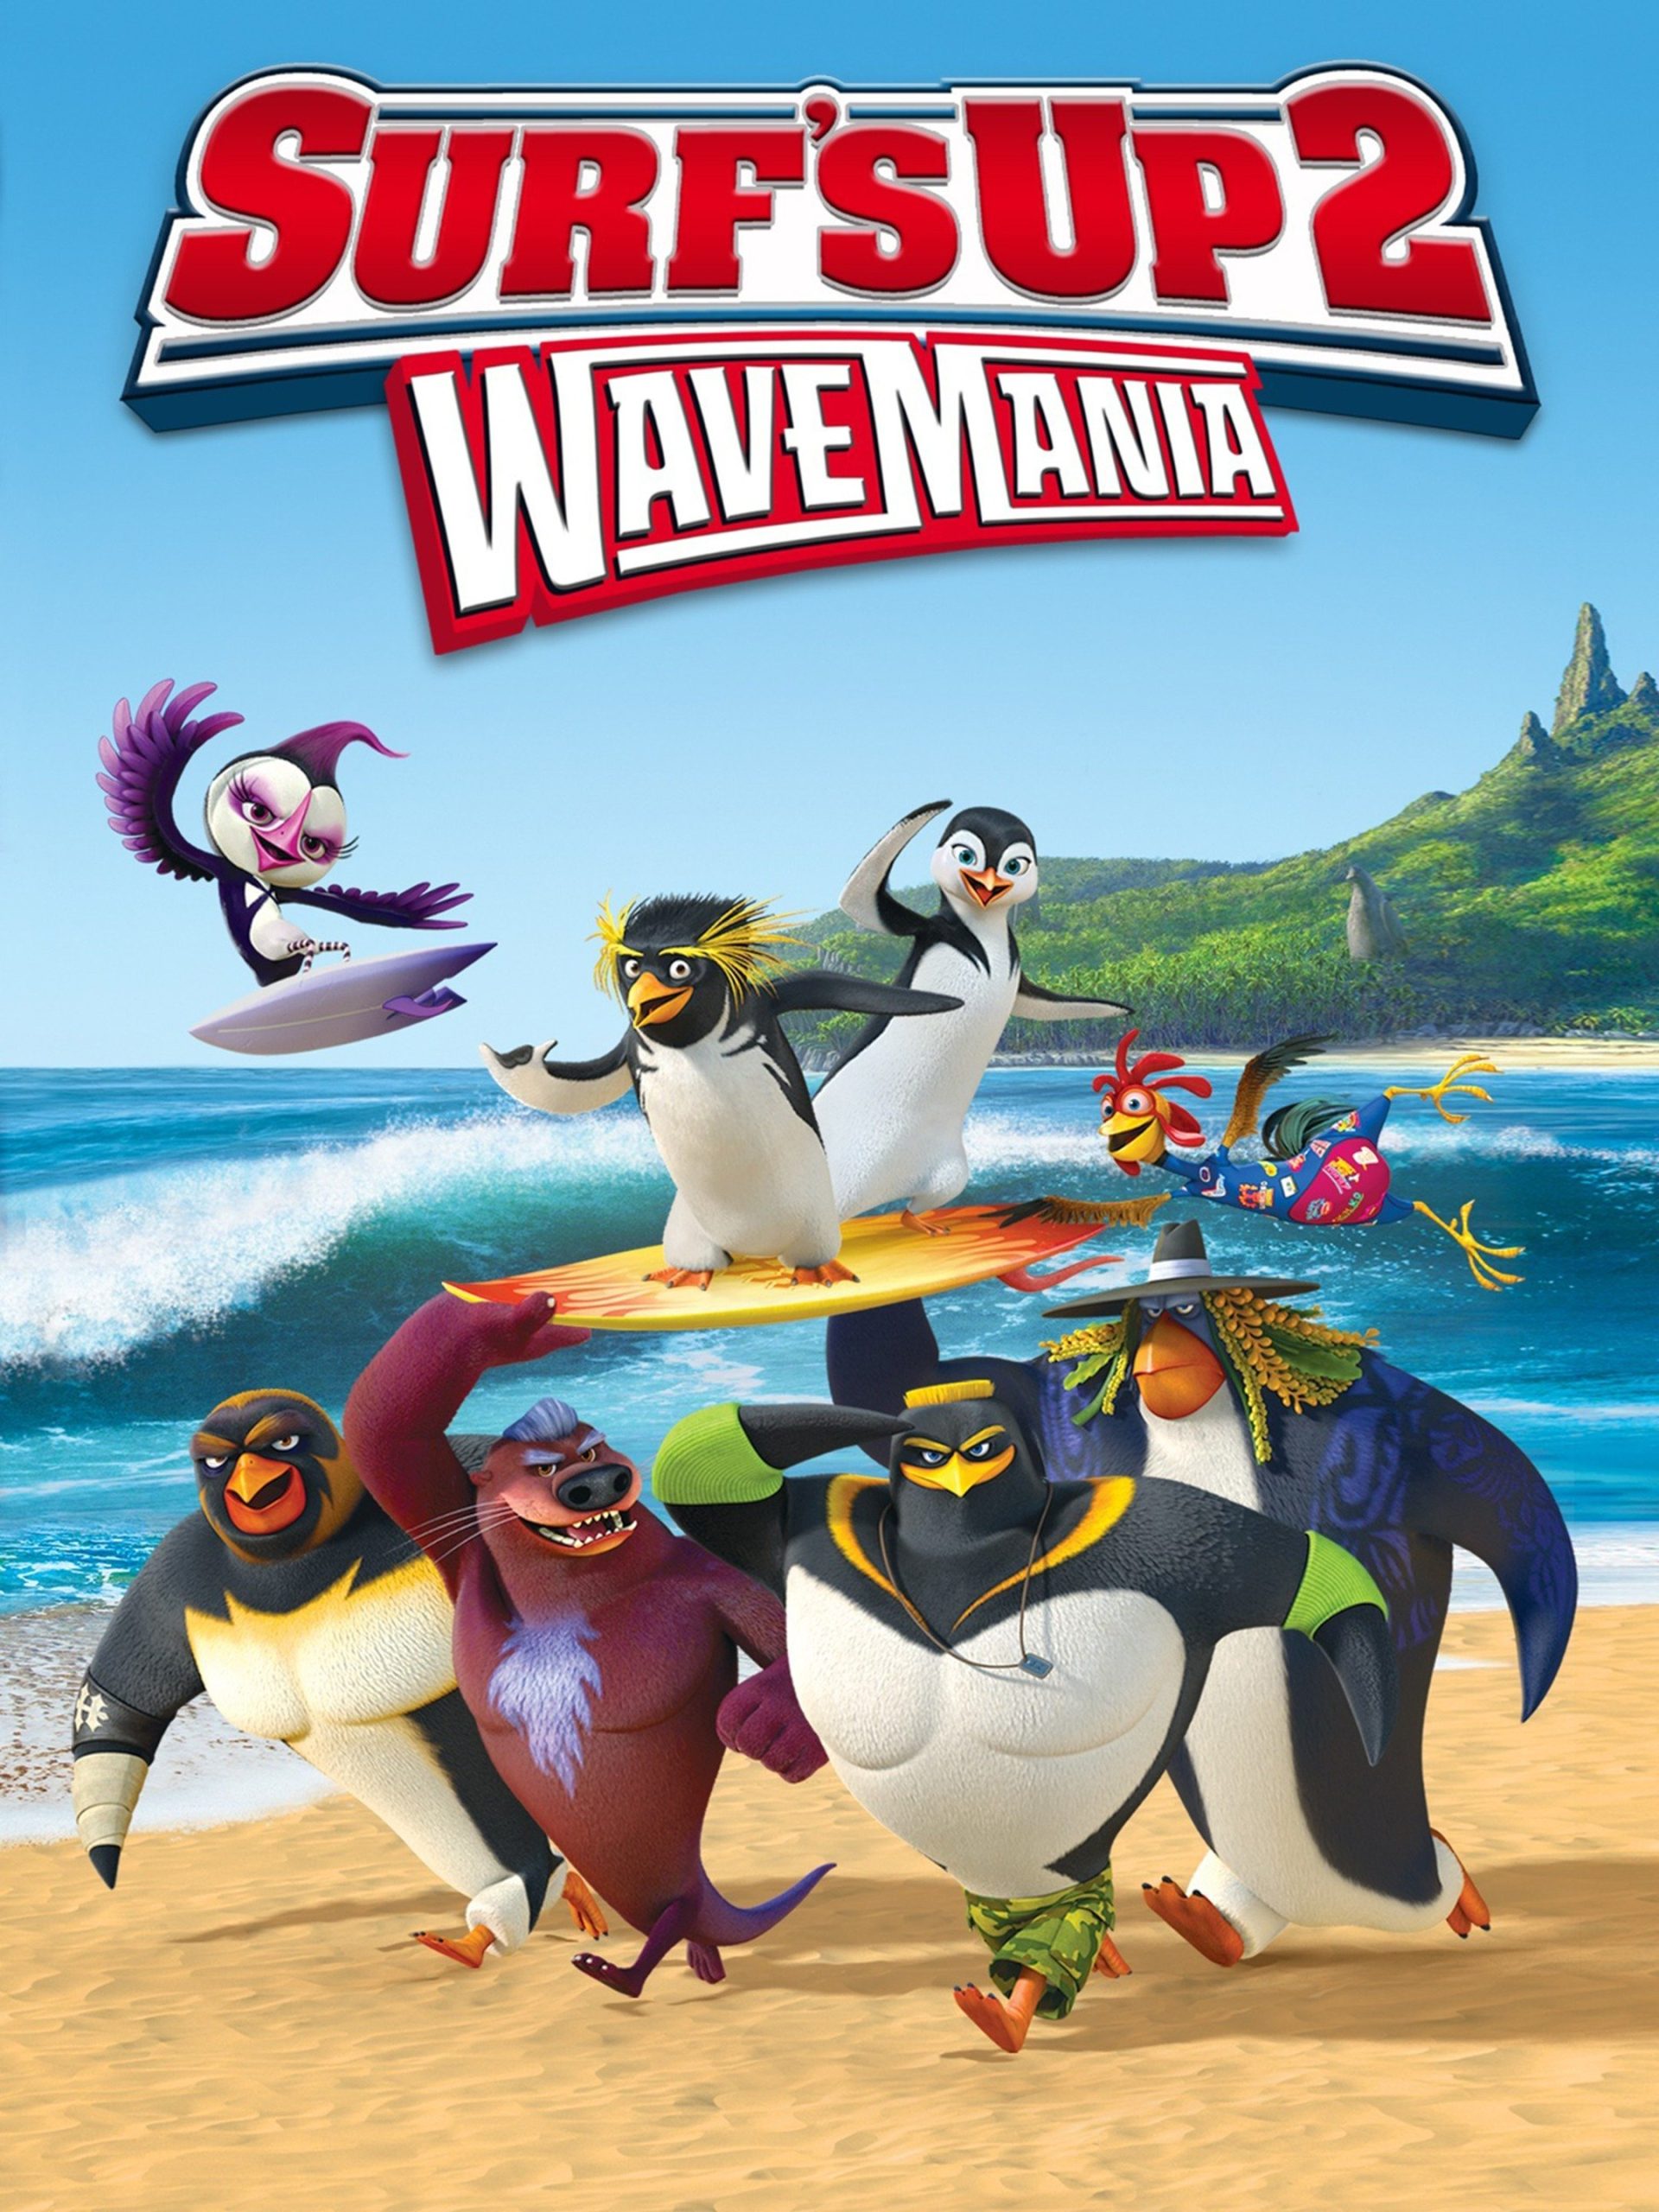 دانلود صوت دوبله انیمیشن Surf’s Up 2 – WaveMania